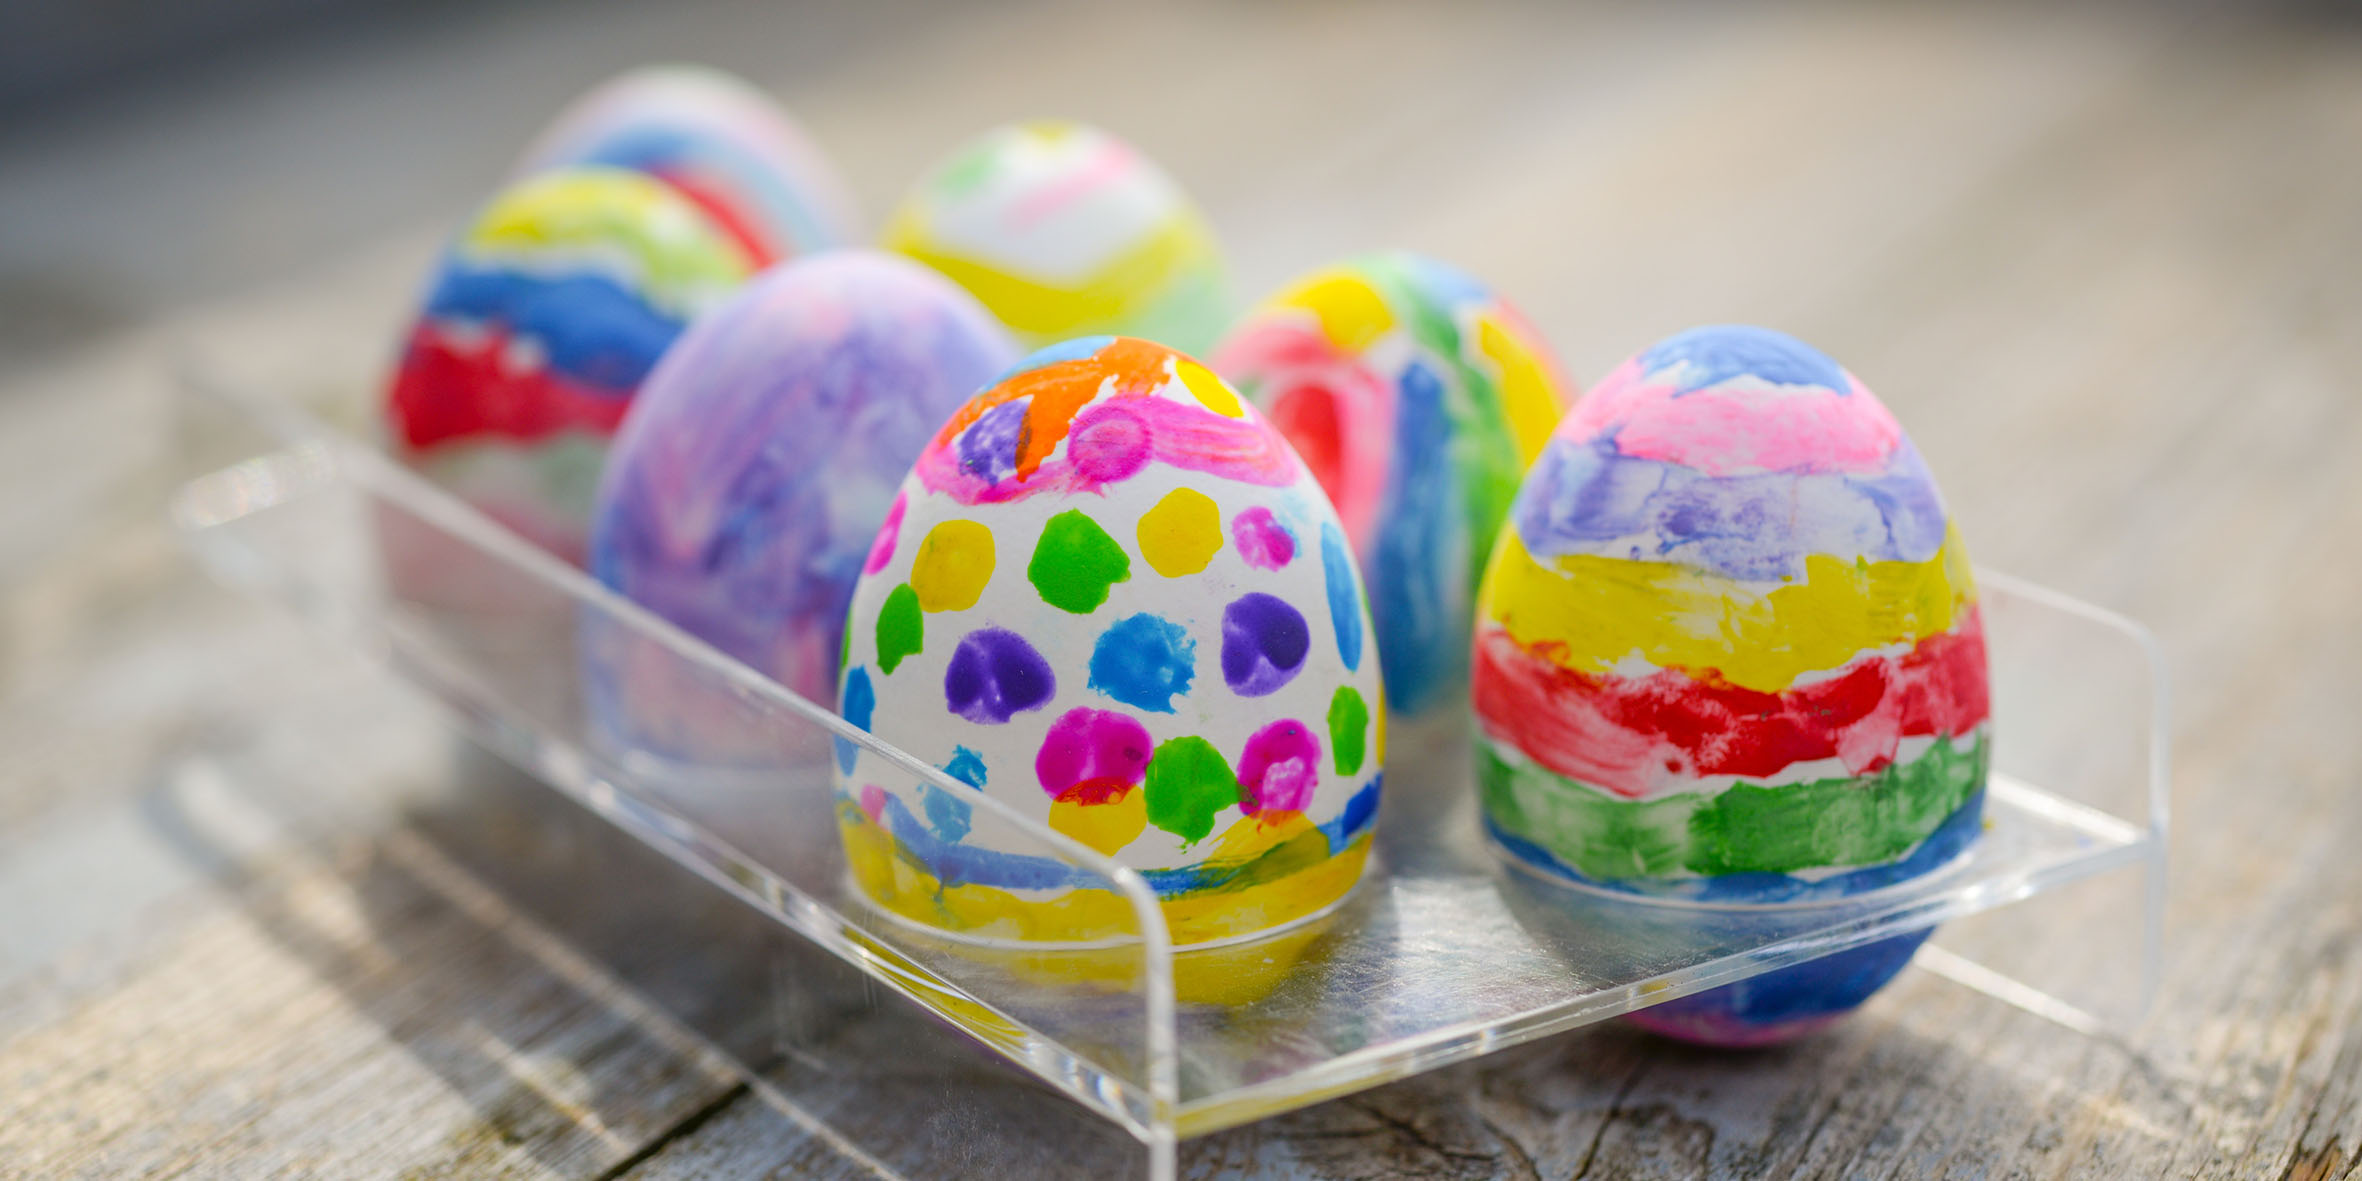 Ägg som är målade med alla möjliga färger och motiv som står i en plasthållare